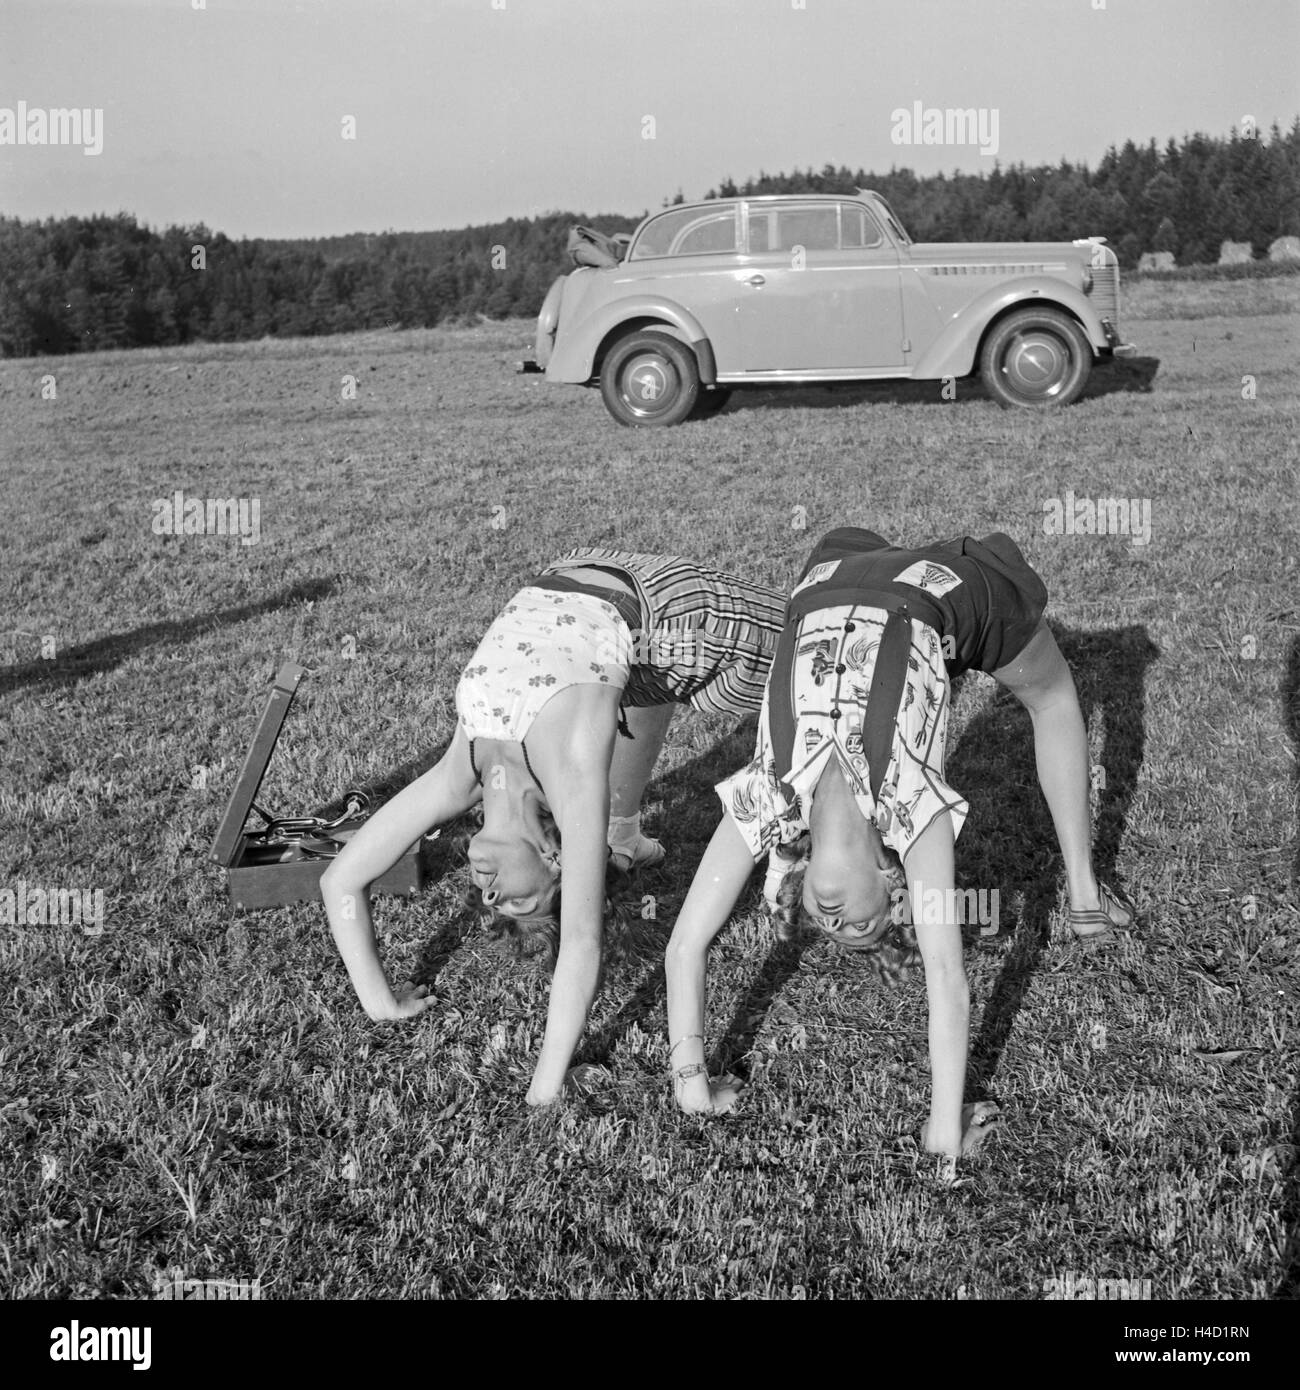 Frauen bei der Gymnastik auf einer Wiese, Deutschland 1930er Jahre. Las mujeres haciendo gimnasia sobre el césped, Alemania 1930. Foto de stock